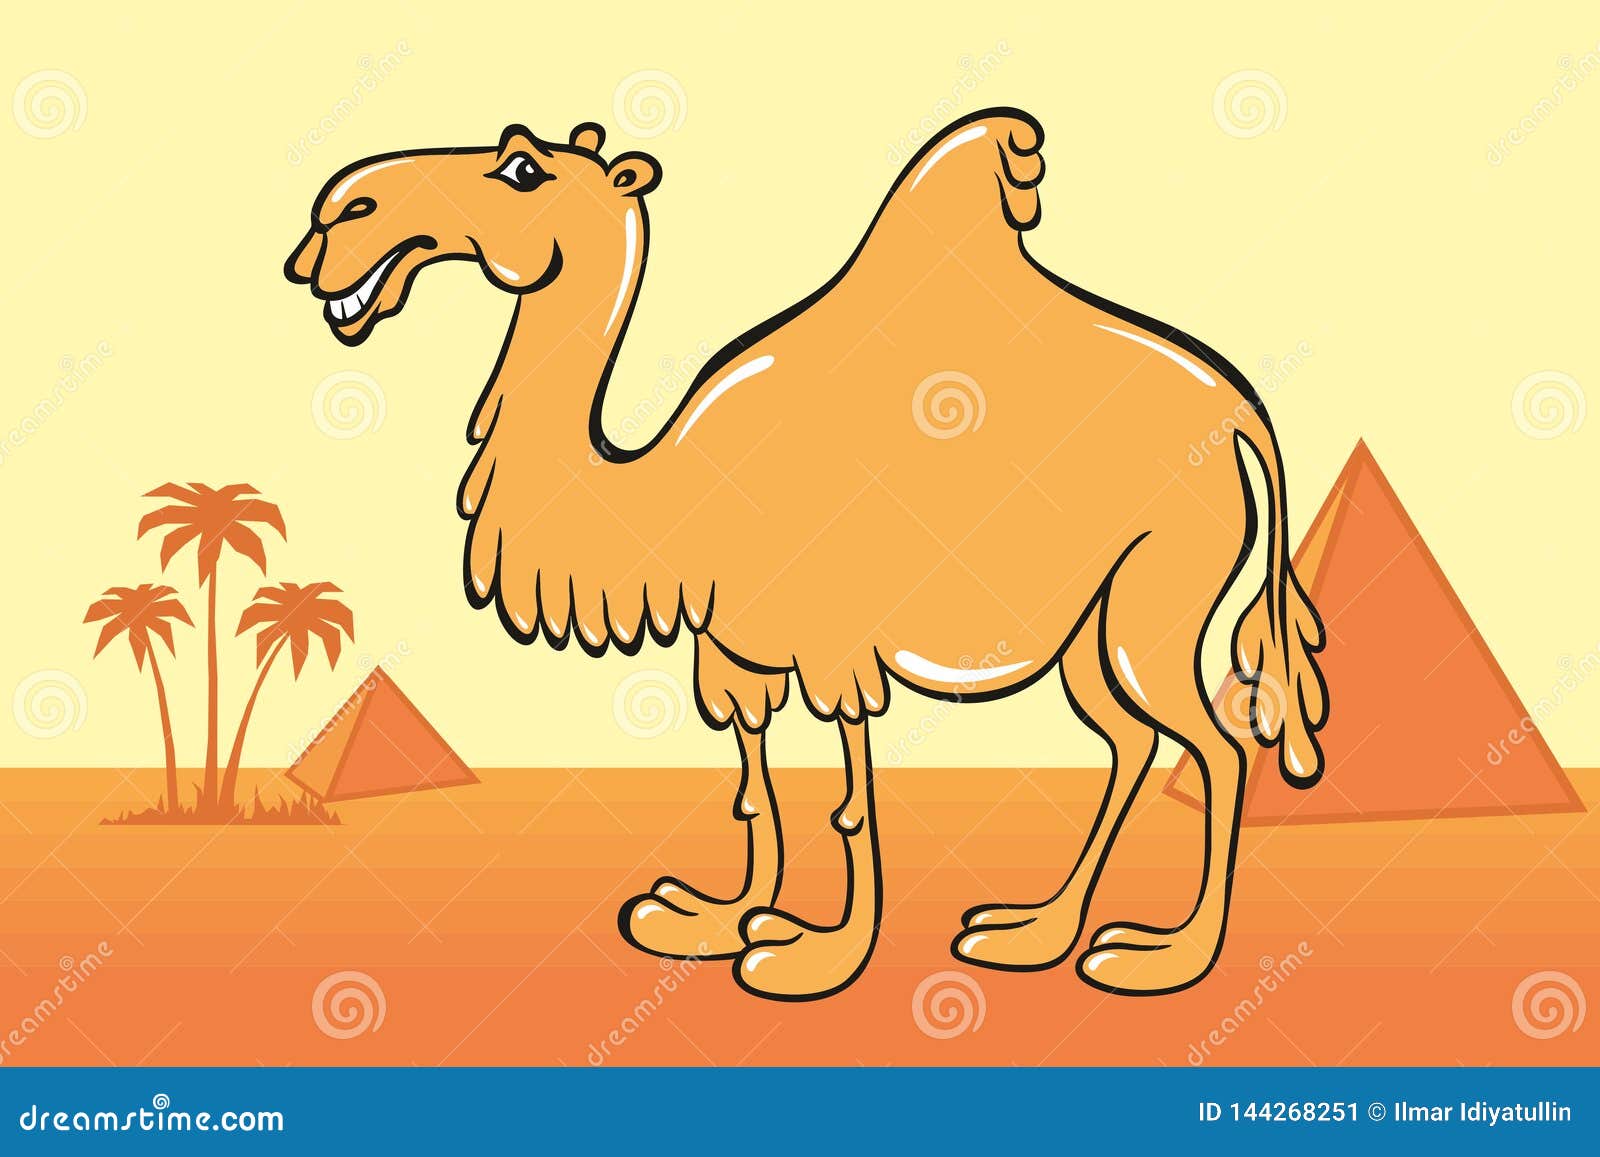 Рисунок верблюда раскрашенный